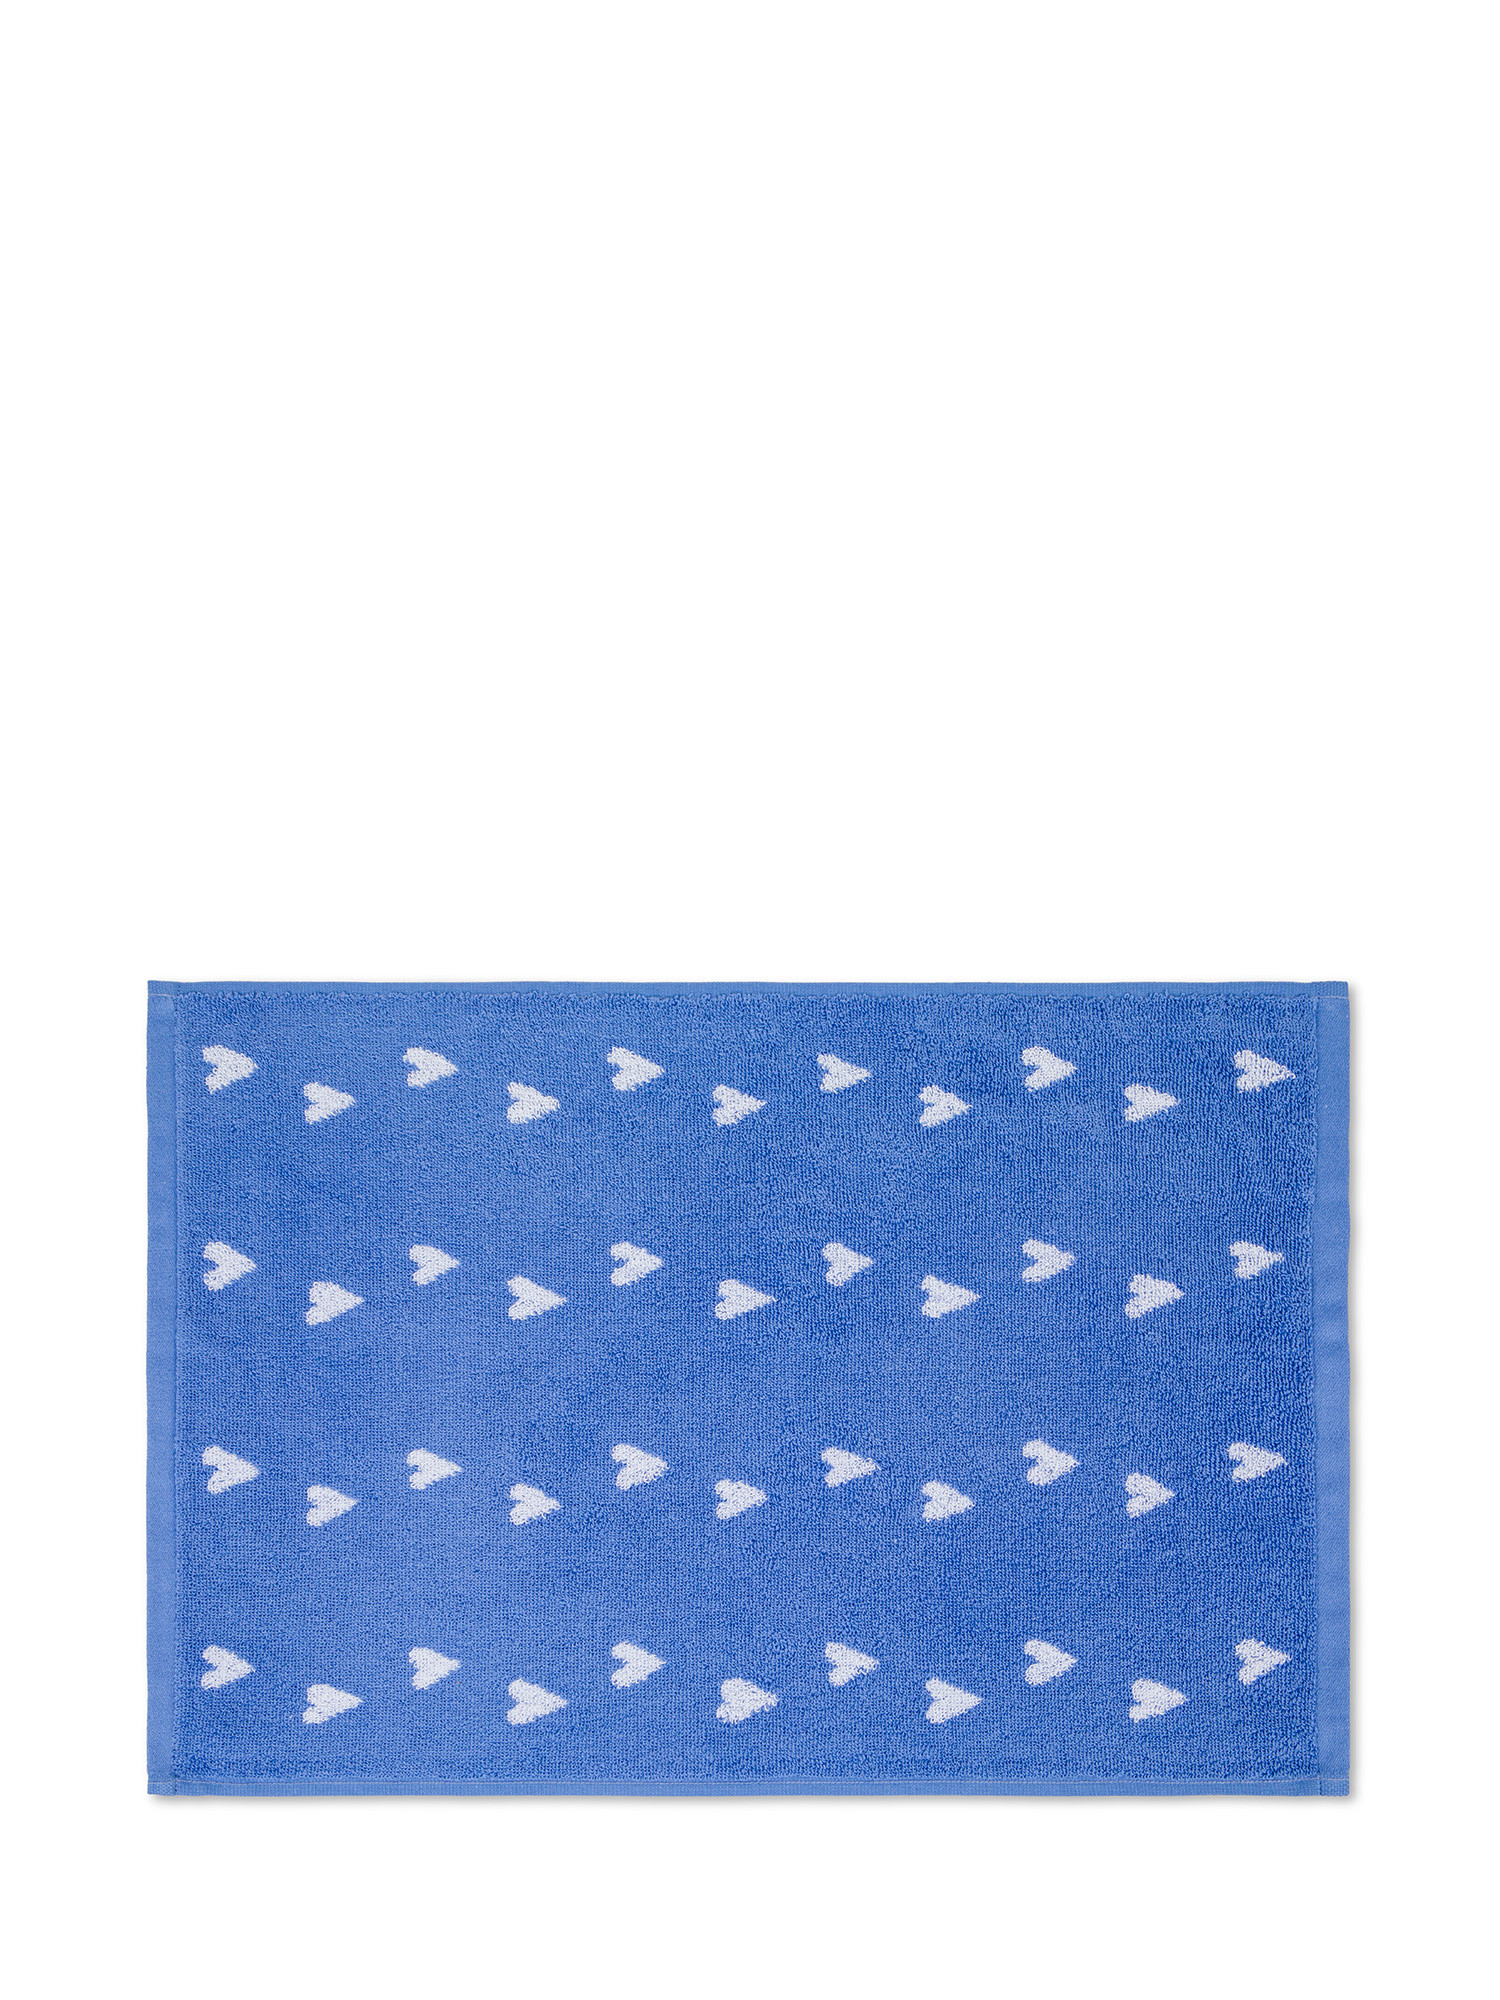 Asciugamano in spugna di cotone motivo cuoricini, Blu, large image number 1